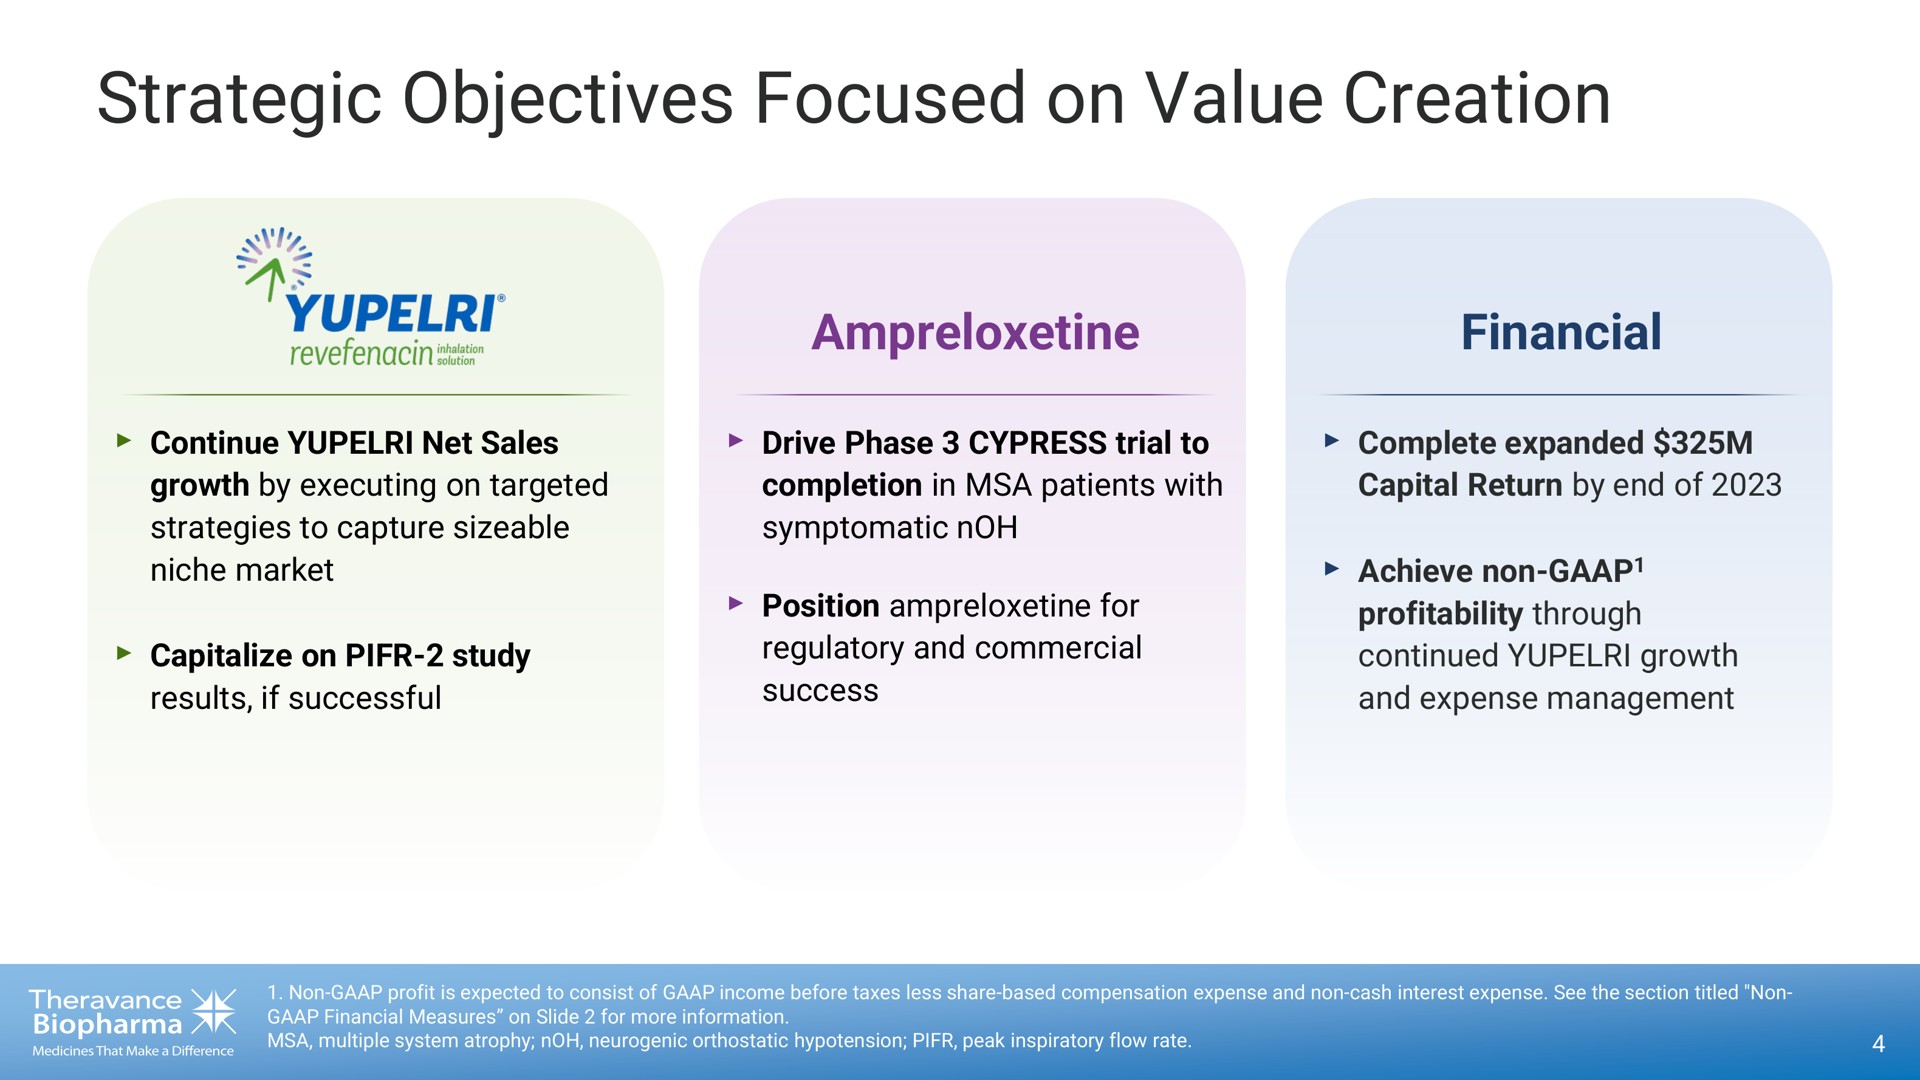 strategic objectives focused on value creation | Theravance Biopharma